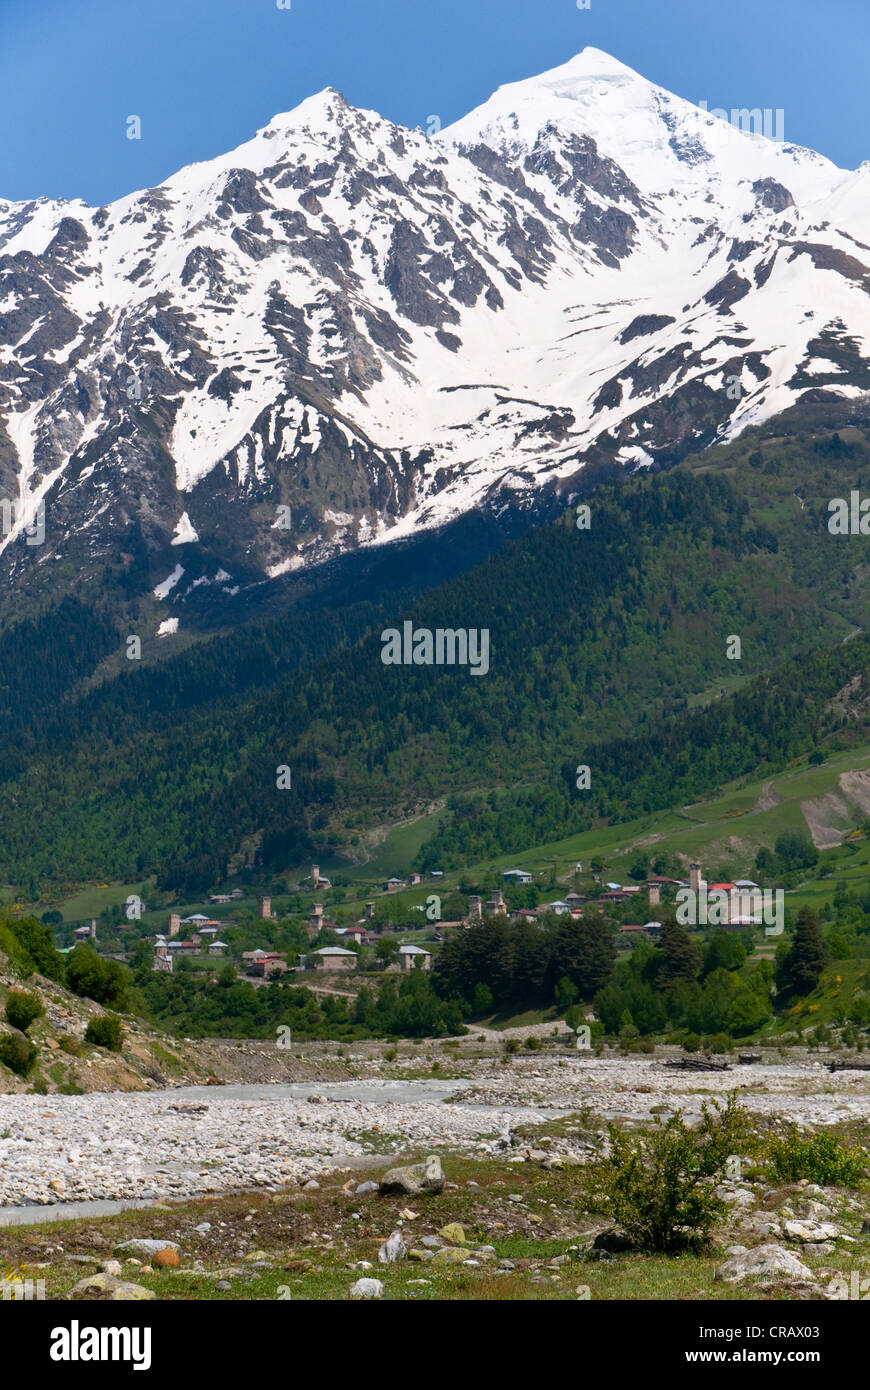 Il paesaggio alpino con le montagne e valli verdi, provincia di Svaneti, Georgia, Medio Oriente Foto Stock